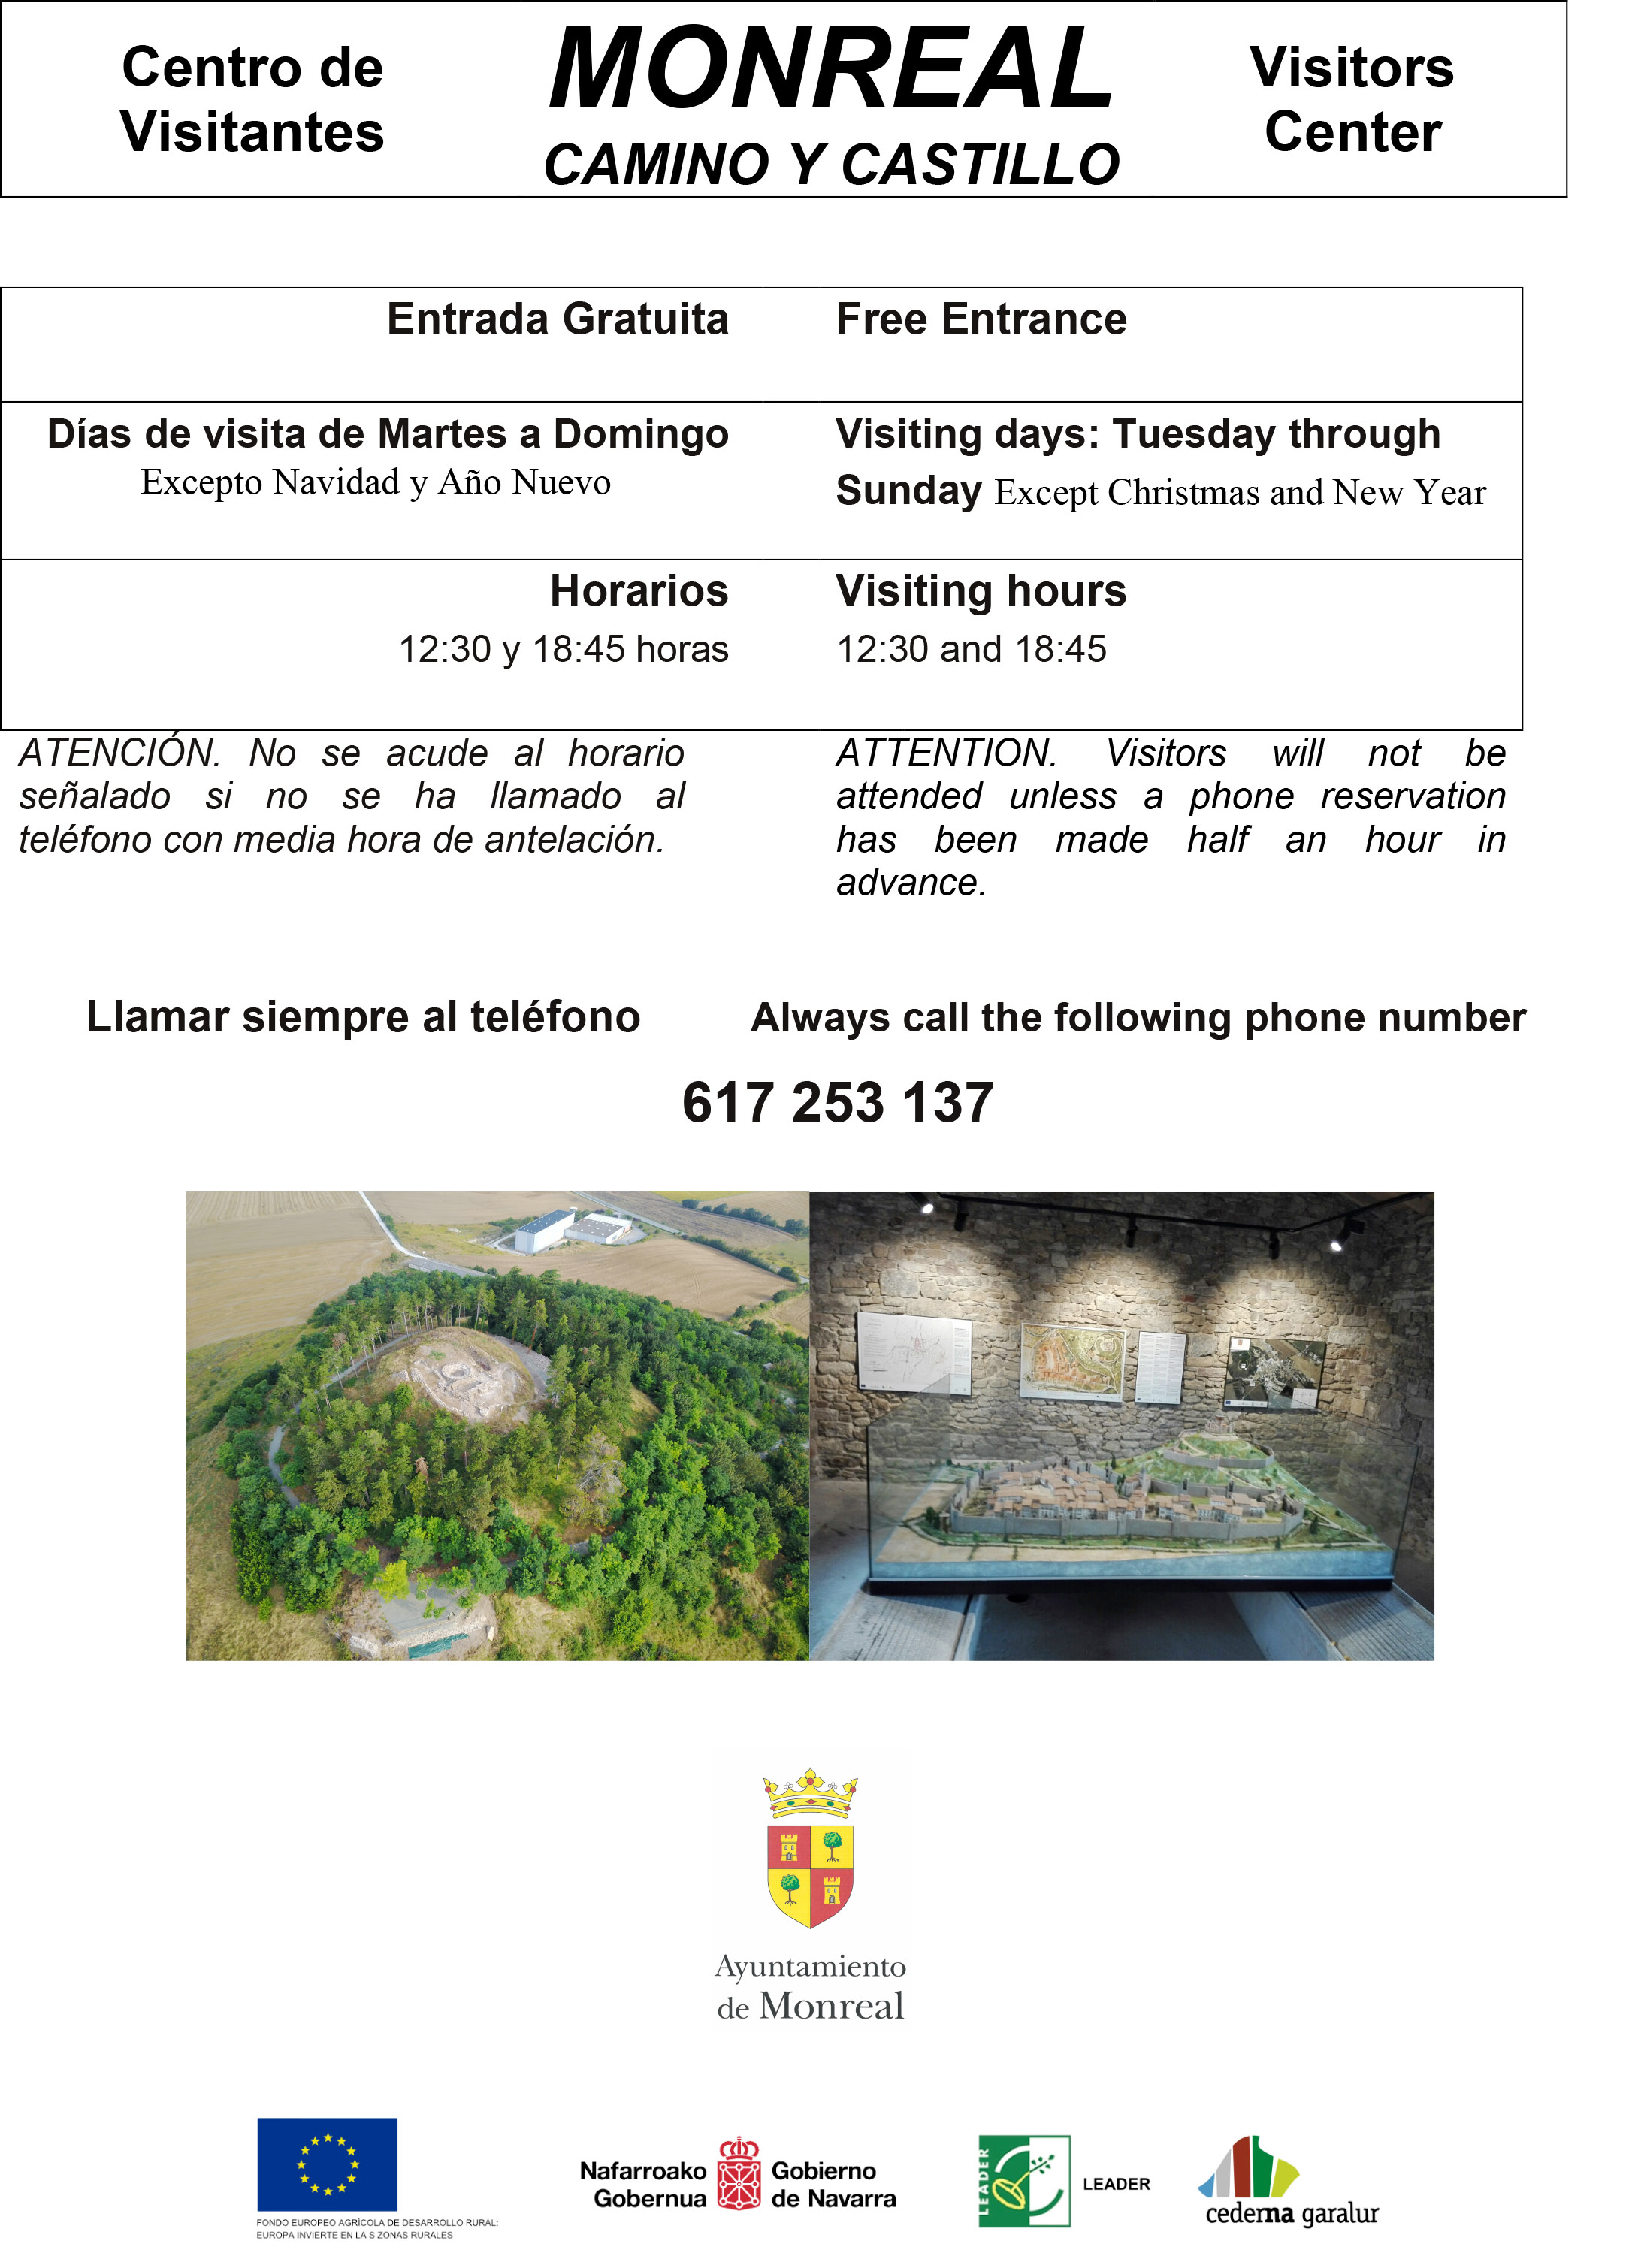 Centro de Visitantes MONREAL “CAMINO Y CASTILLO” / Erdigunea Monreal bisitariak “CAMINO Y CASTILLO”